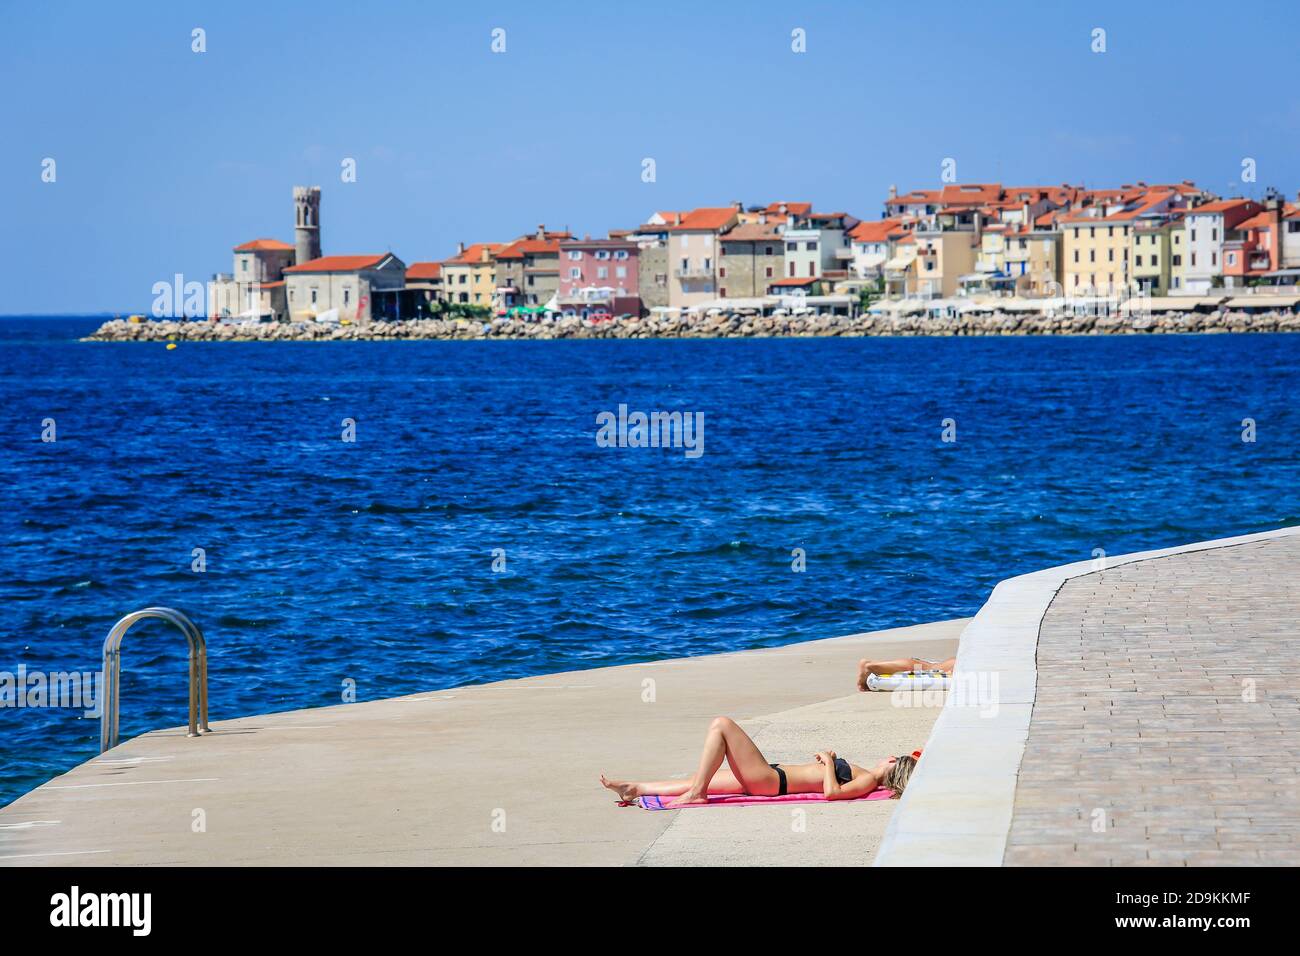 Piran, Istria, Slovenia - bagnanti sulla spiaggia della città di cemento Fornace della città portuale di Piran sul Mar Mediterraneo. Foto Stock